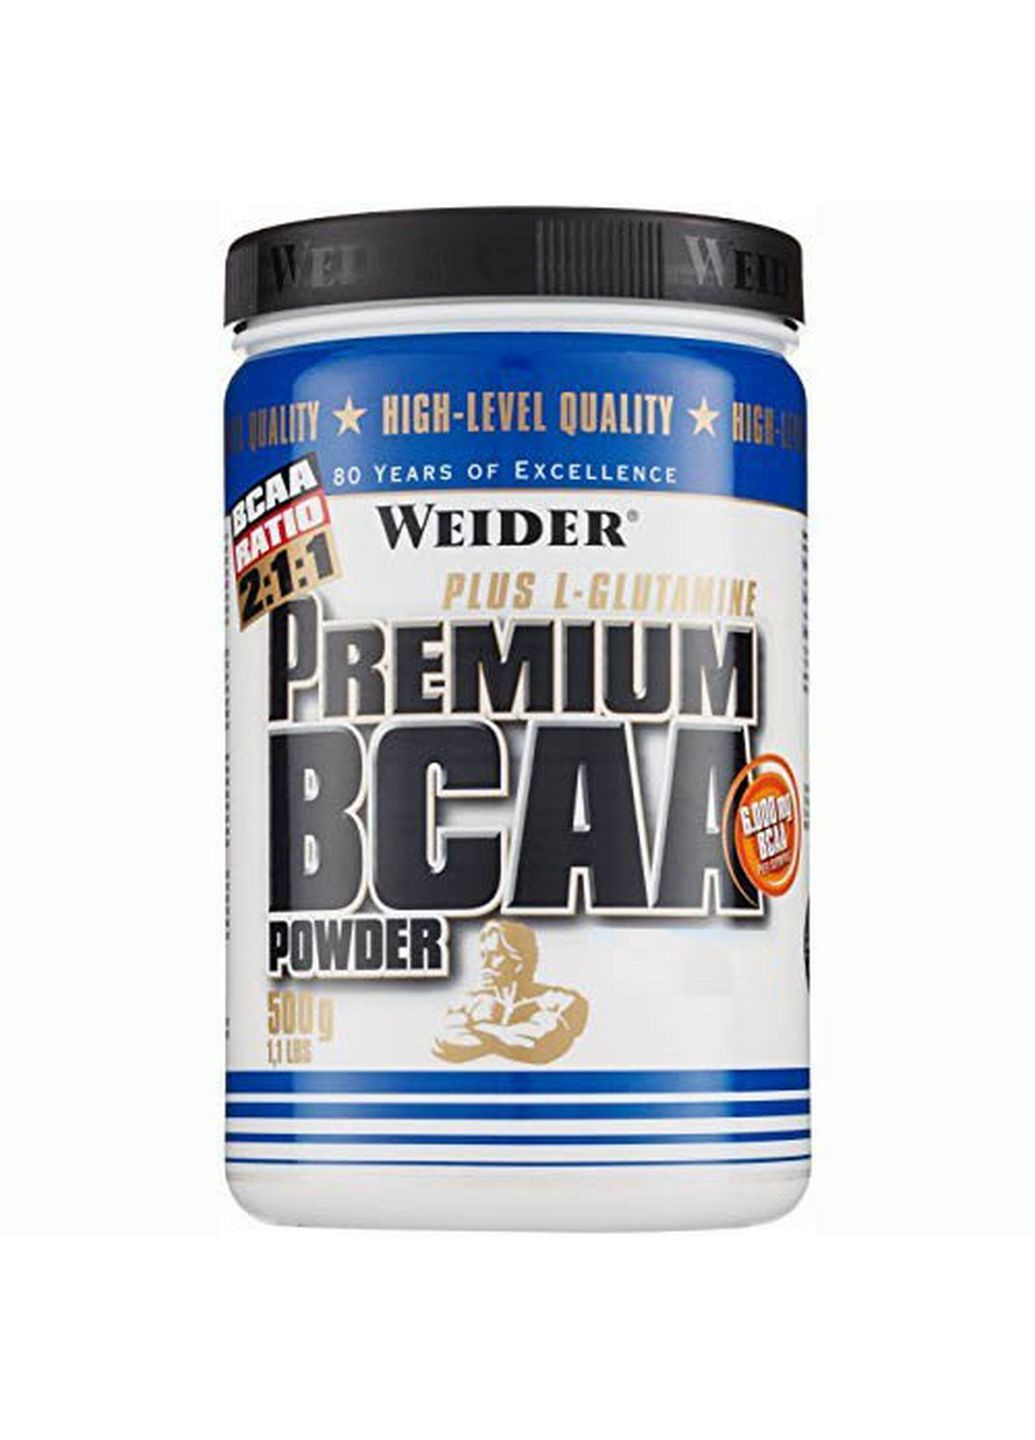 Аминокислота BCAA Premium BCAA Powder, 500 грамм Апельсин Weider (293339526)